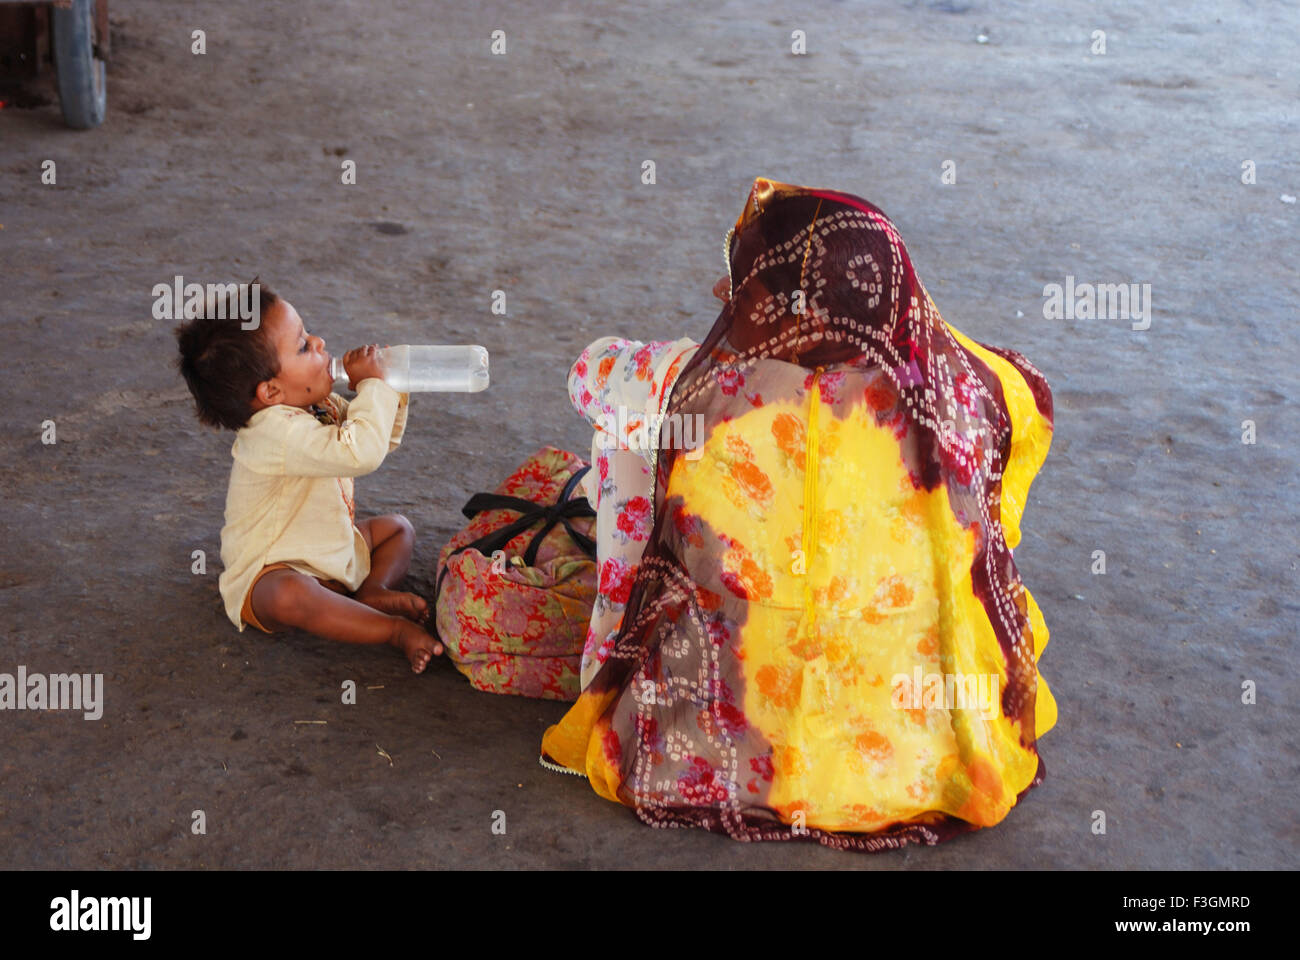 Étancher la soif d'un enfant à la plate-forme ferroviaire ; Inde Rajasthan ; Banque D'Images